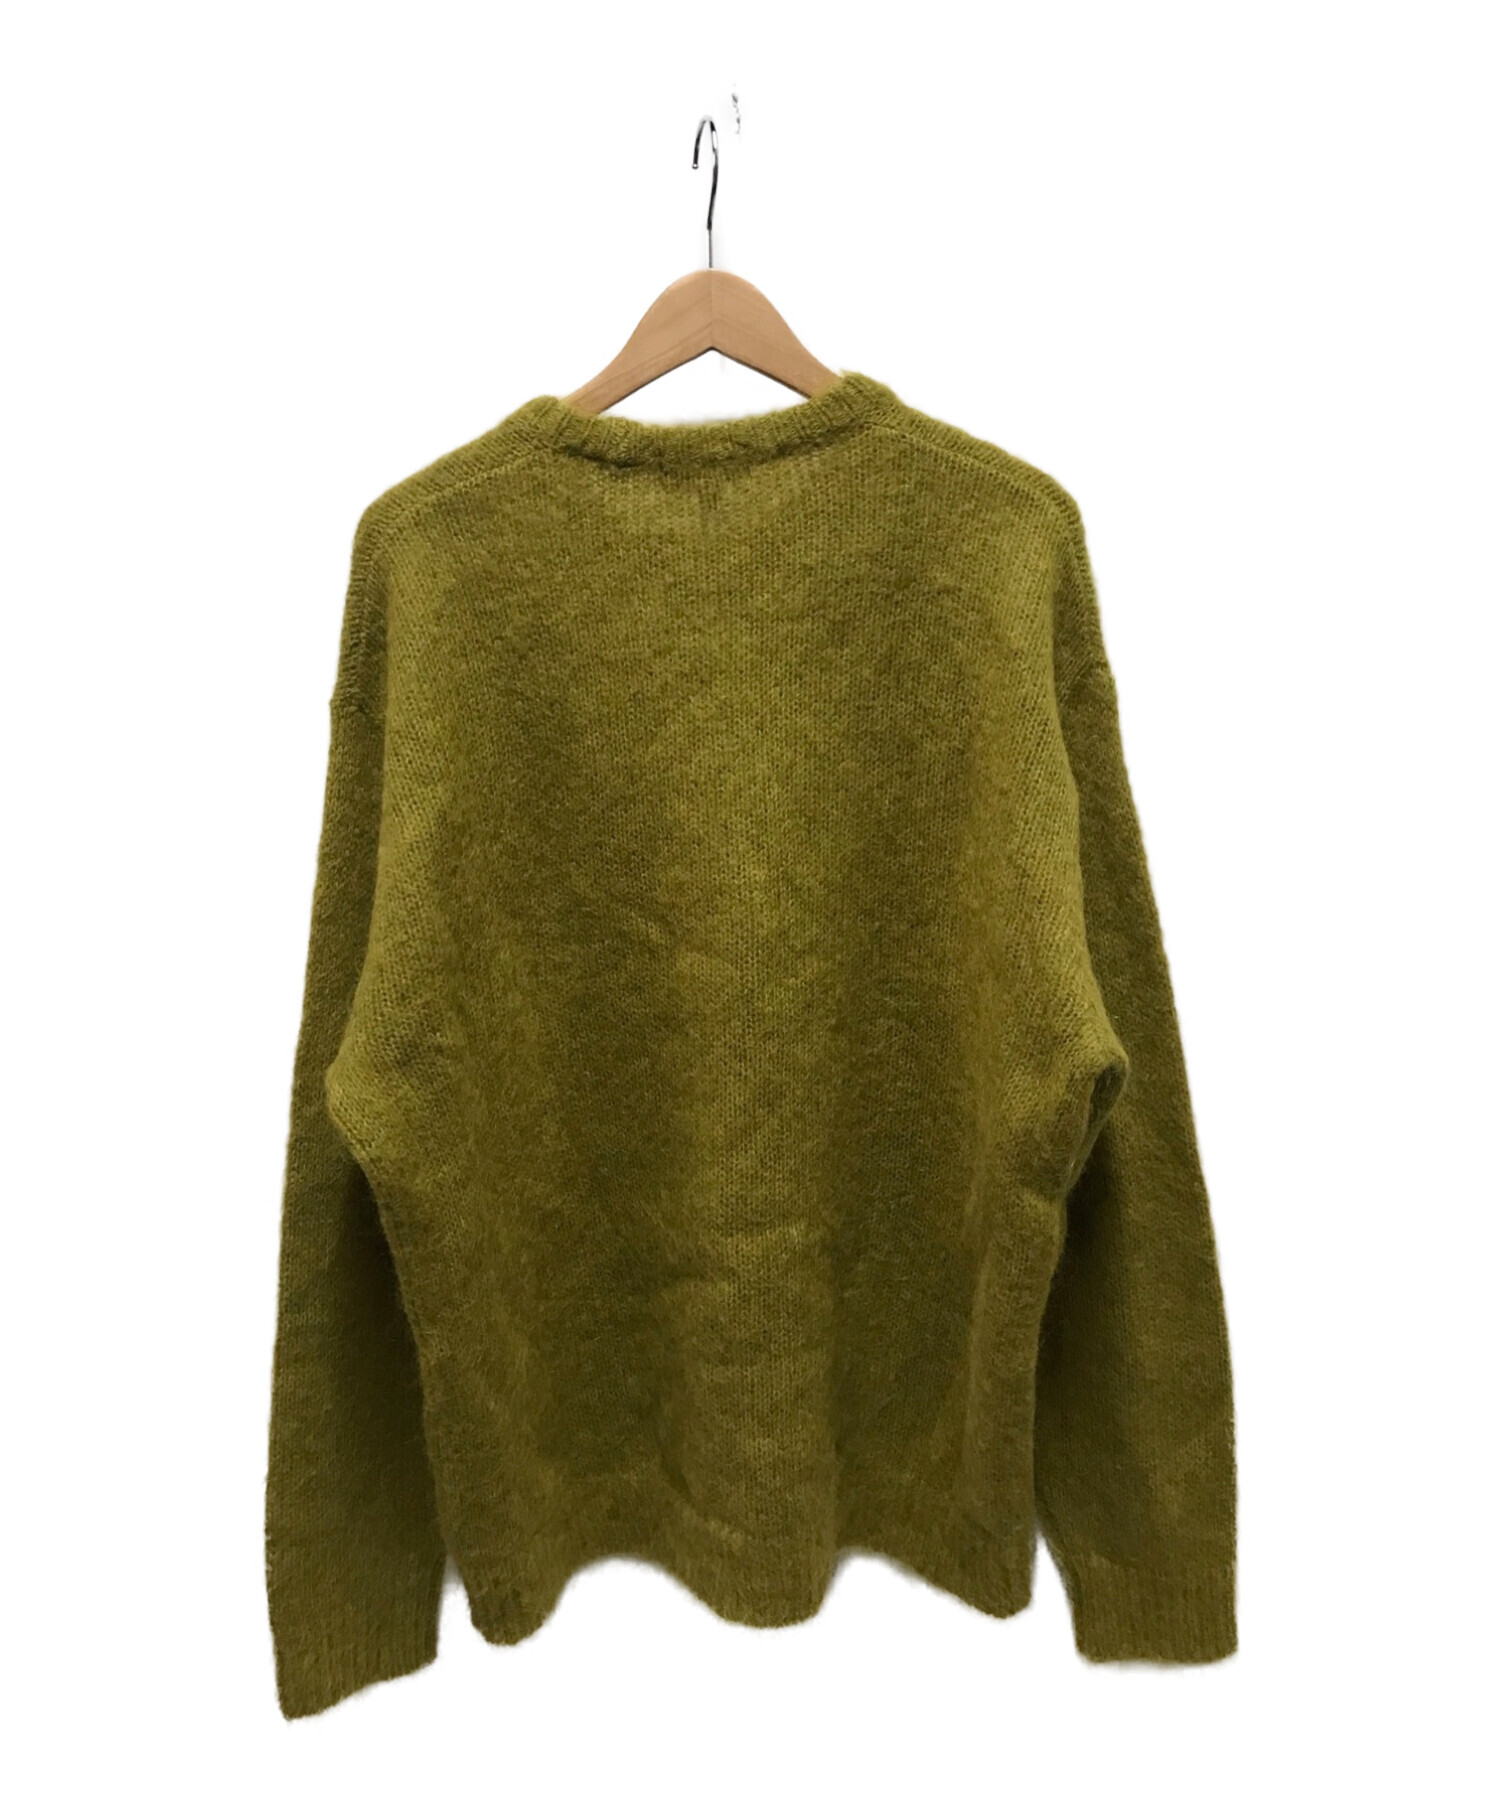 SUPREME (シュプリーム) モヘアセーター / Mohair sweater マスタード サイズ:L